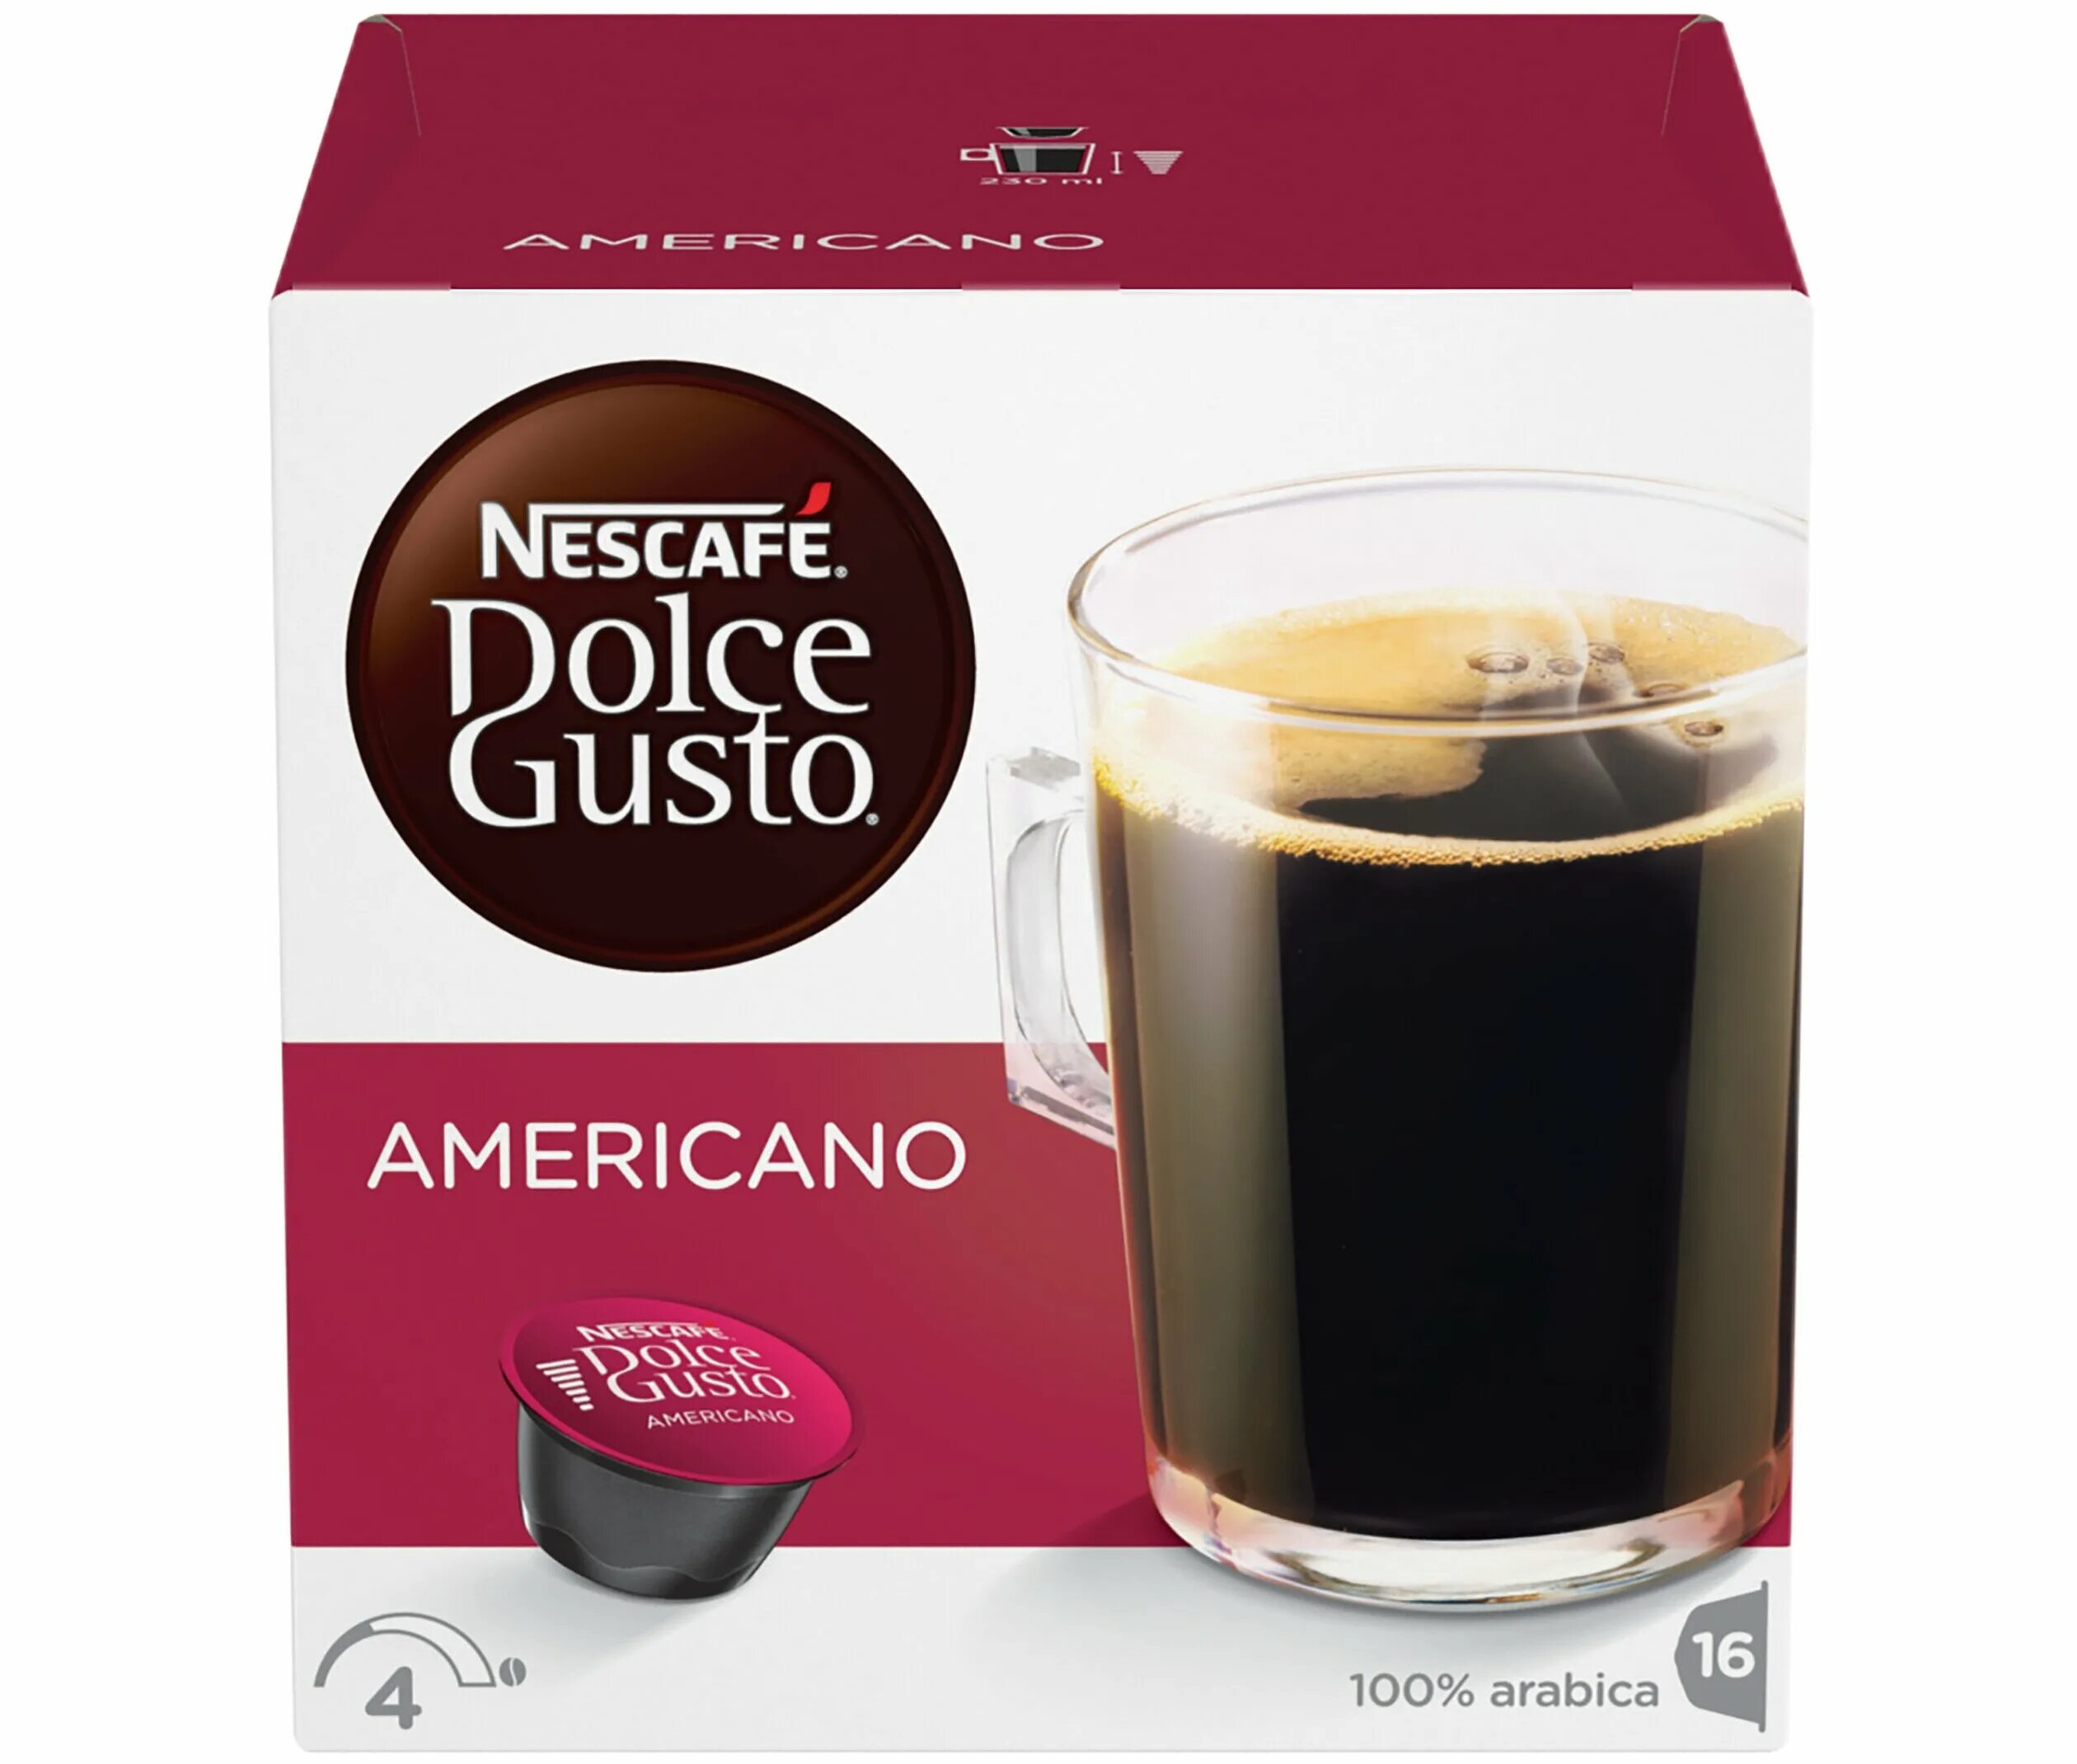 Nescafe капсулы купить. Дольче густо американо капсулы. Капсулы Нескафе Дольче густо американо. Кофе в капсулах американо Дольче густо. Кофе в капсулах Nescafe Dolce gusto americano (16 капс.).